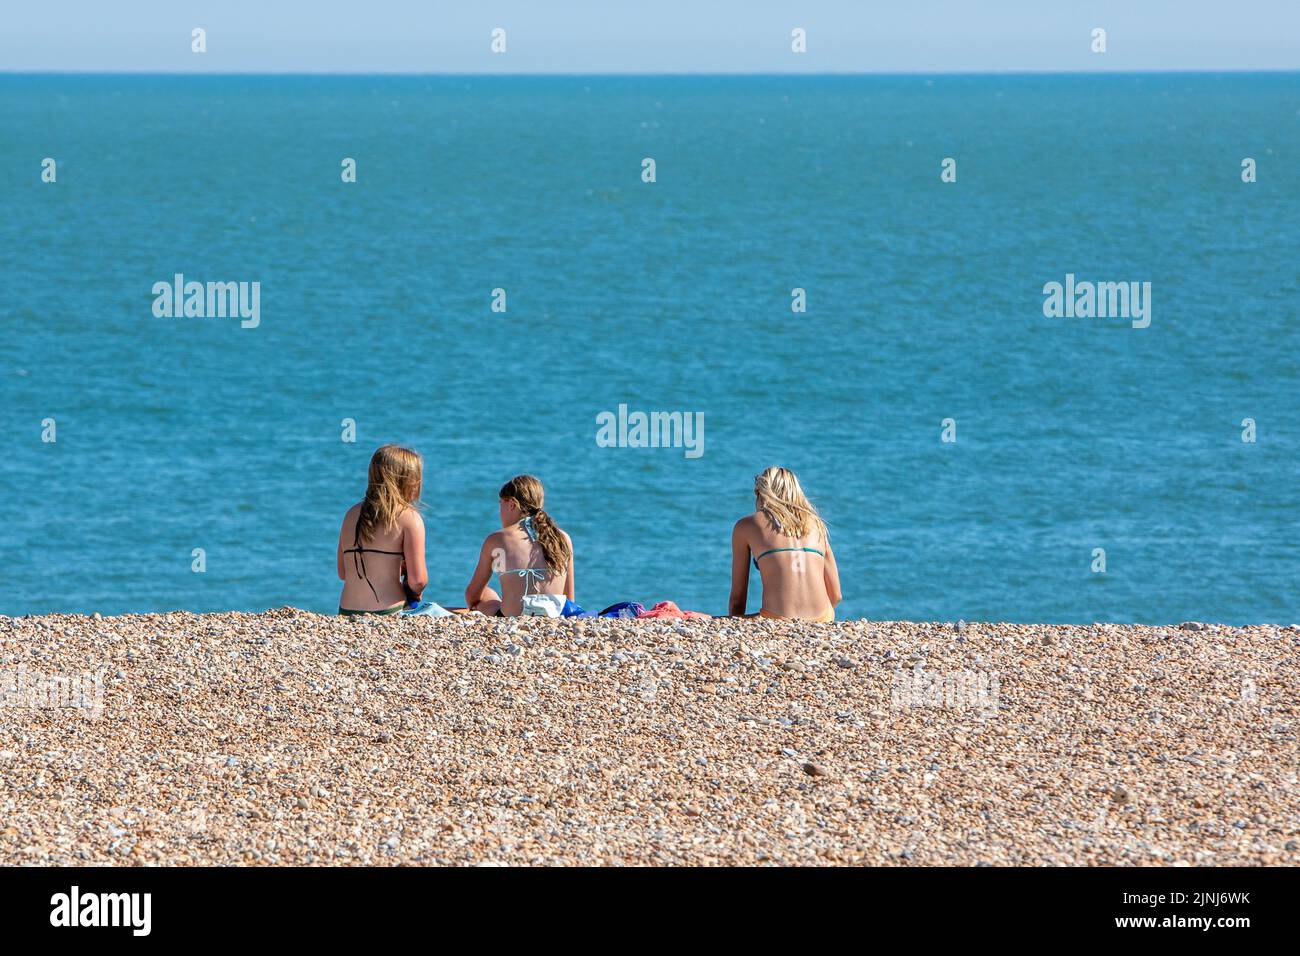 Tres mujeres jóvenes tomando el sol en una playa de guijarros junto a un mar azul y tranquilo Foto de stock